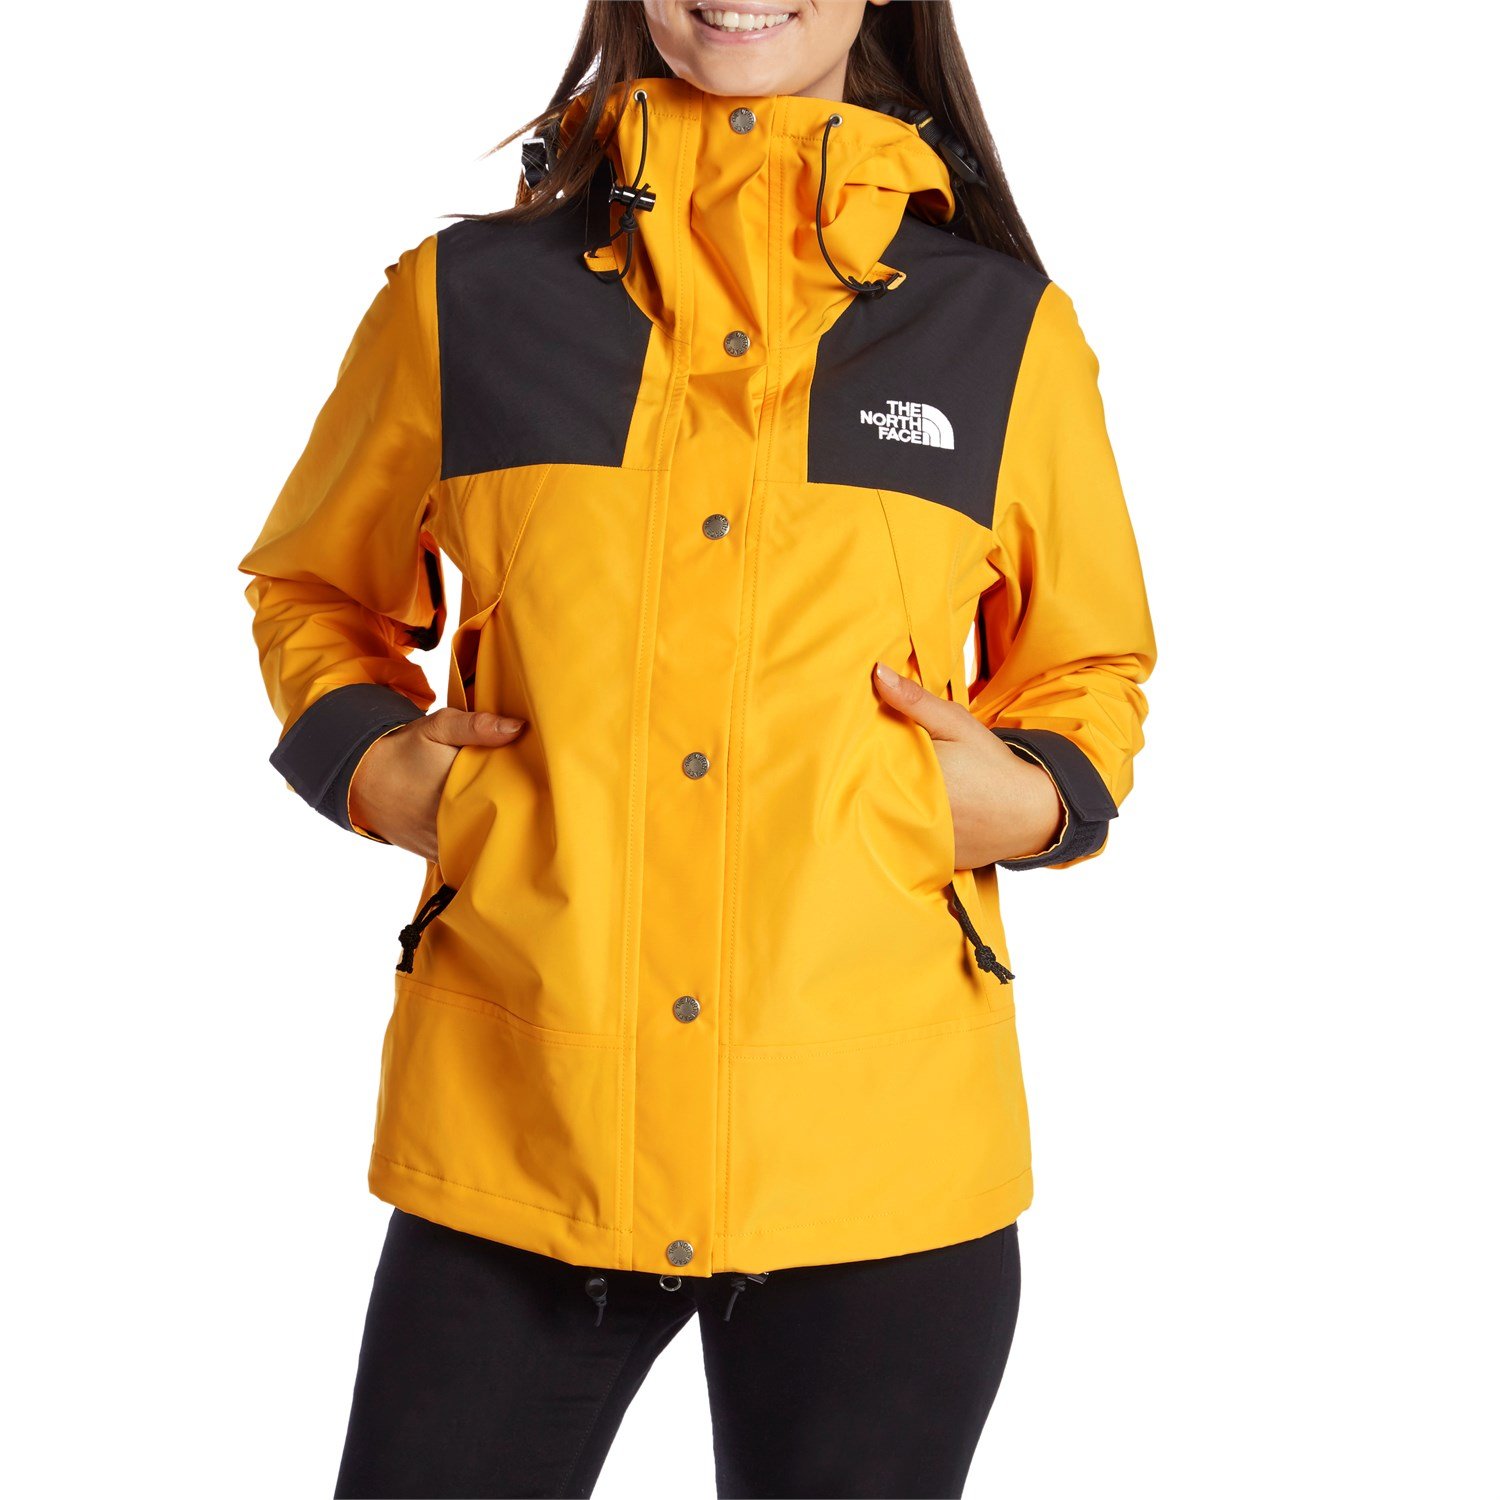 1990 mountain jacket gtx yellow